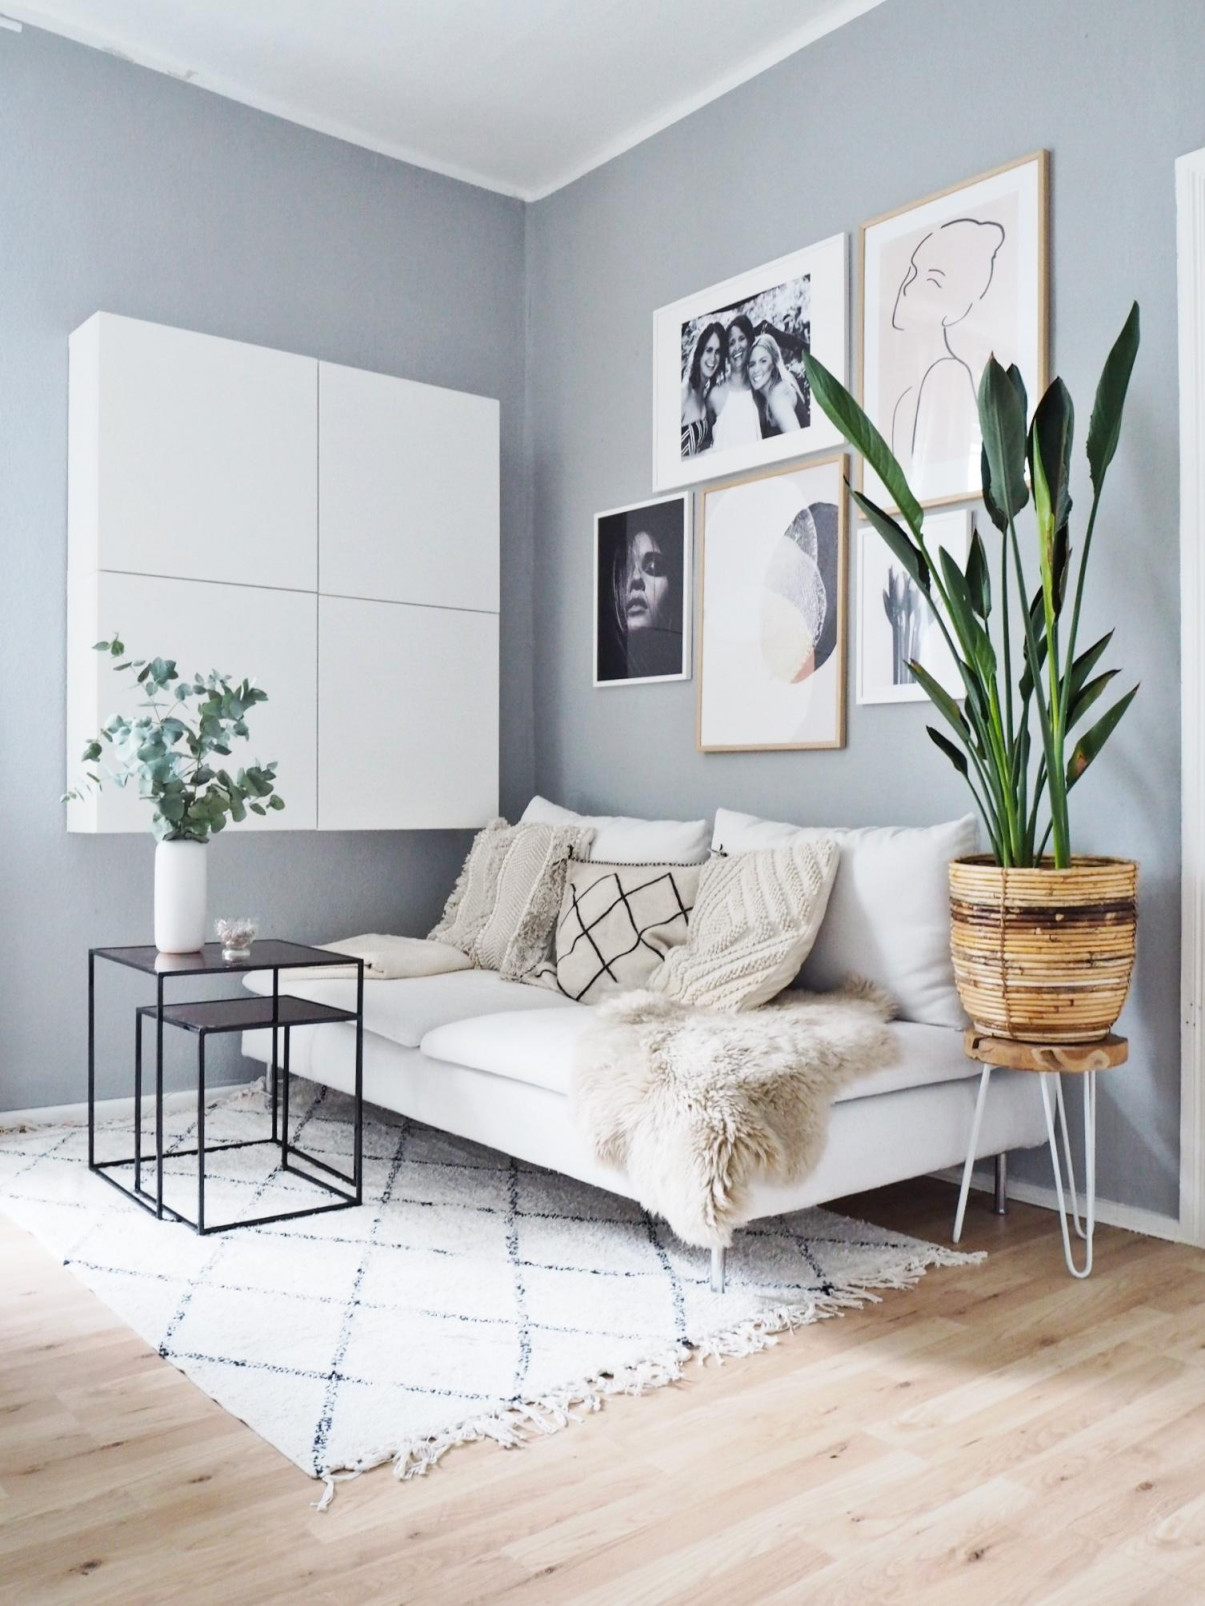 Bilderwandideen Inspiration Bei Couch von Bilderwand Gestalten Wohnzimmer Photo